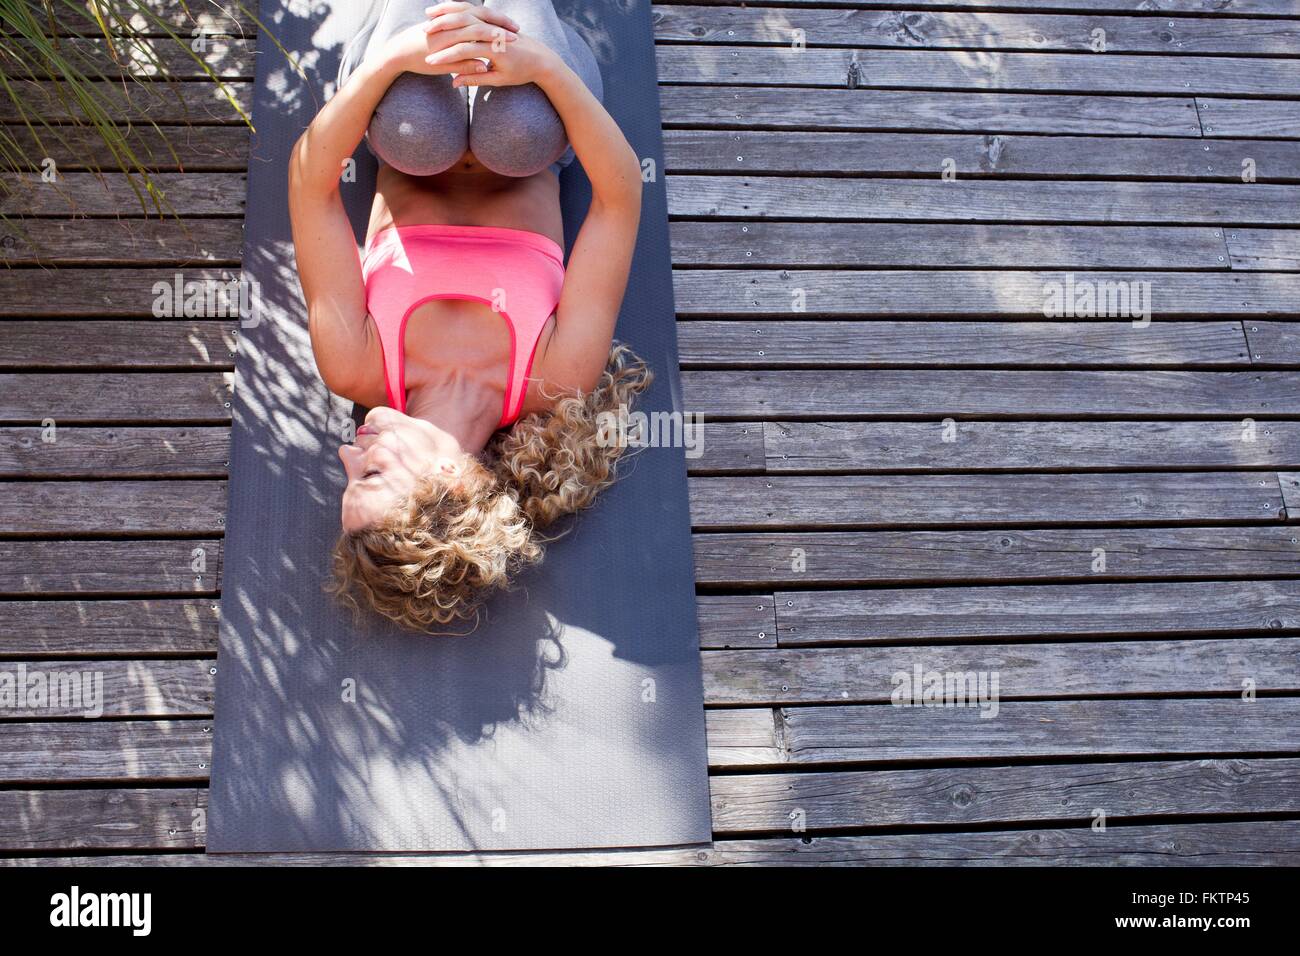 Young woman lying on yoga mat, hugging knees, high angle Stock Photo